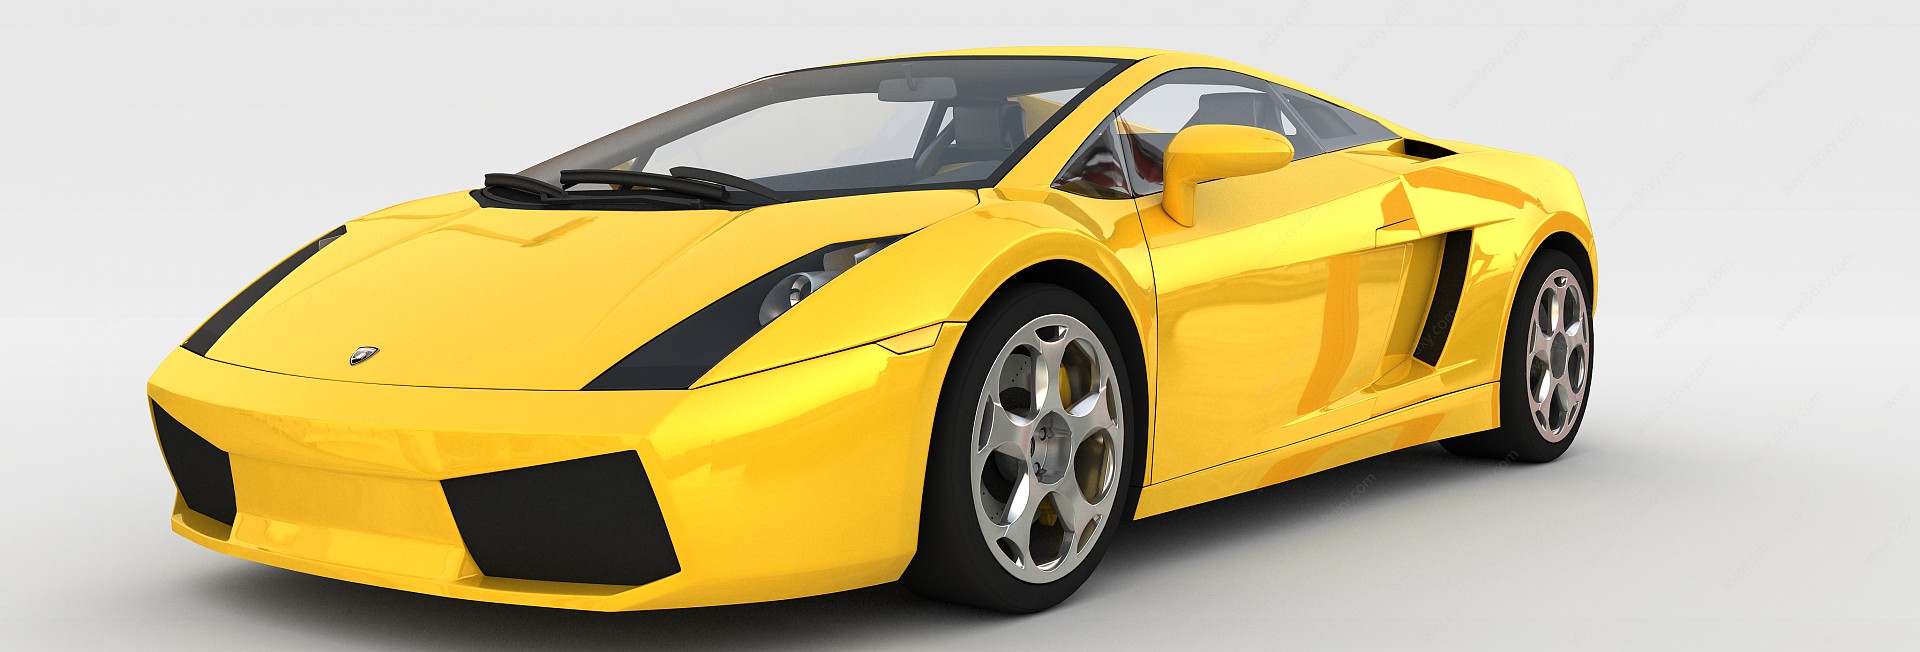 高档轿车3D模型